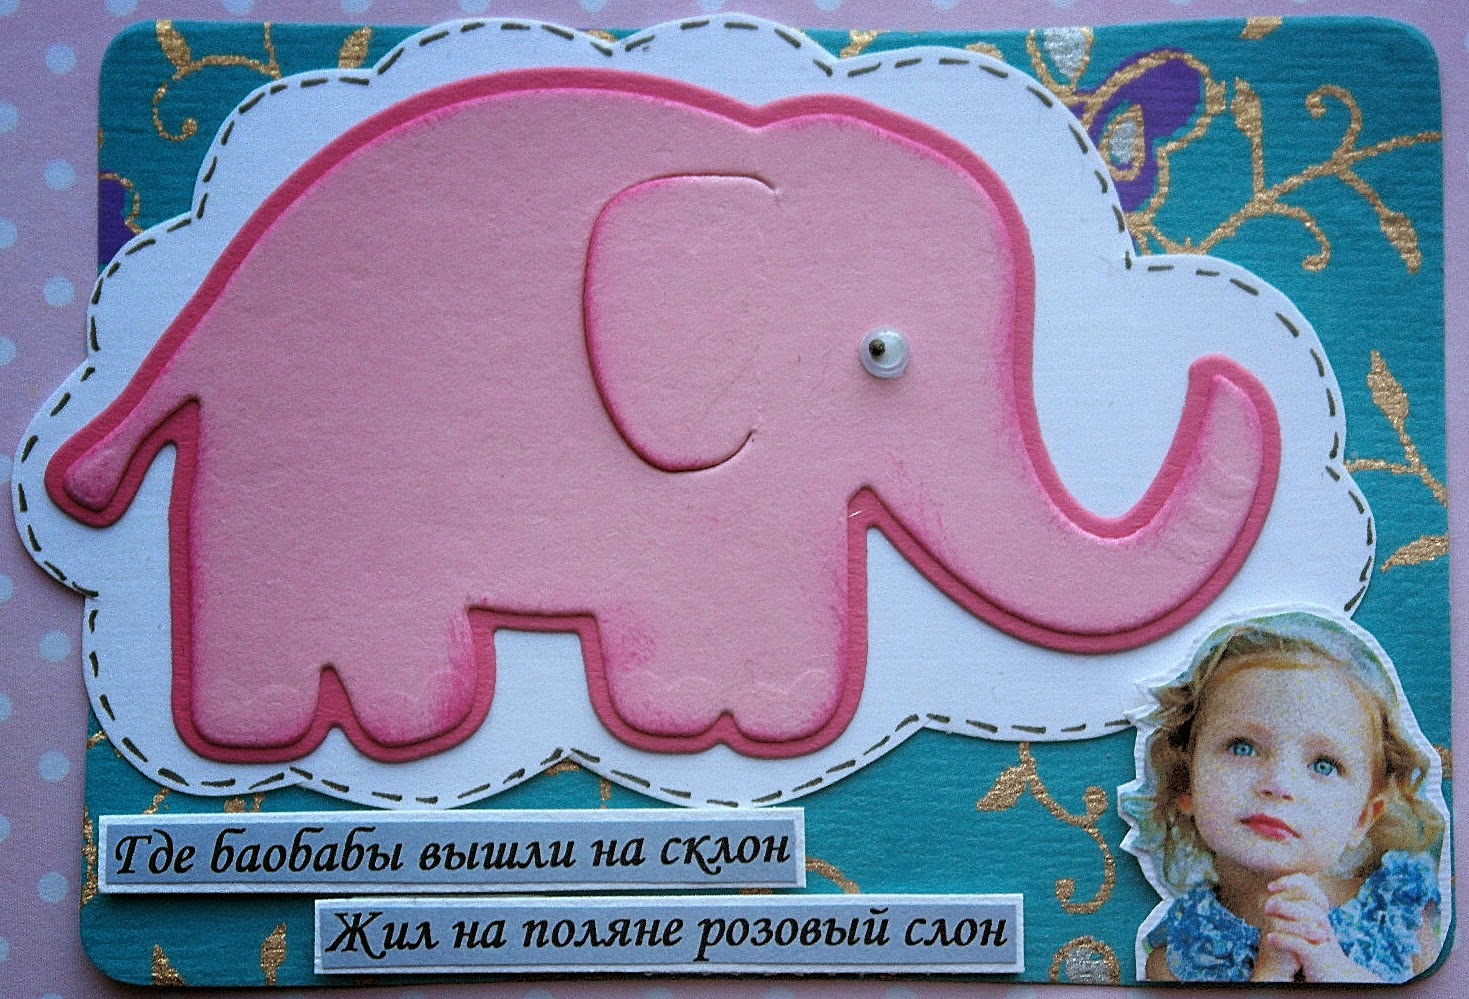 Песня жил на поляне розовый. Розовый слон стихотворение. Жил на Поляне розовый слон игрушка. Жил на Поляне розовый слон слова. Где баобабы вышли на склон жил на Поляне розовый слон.